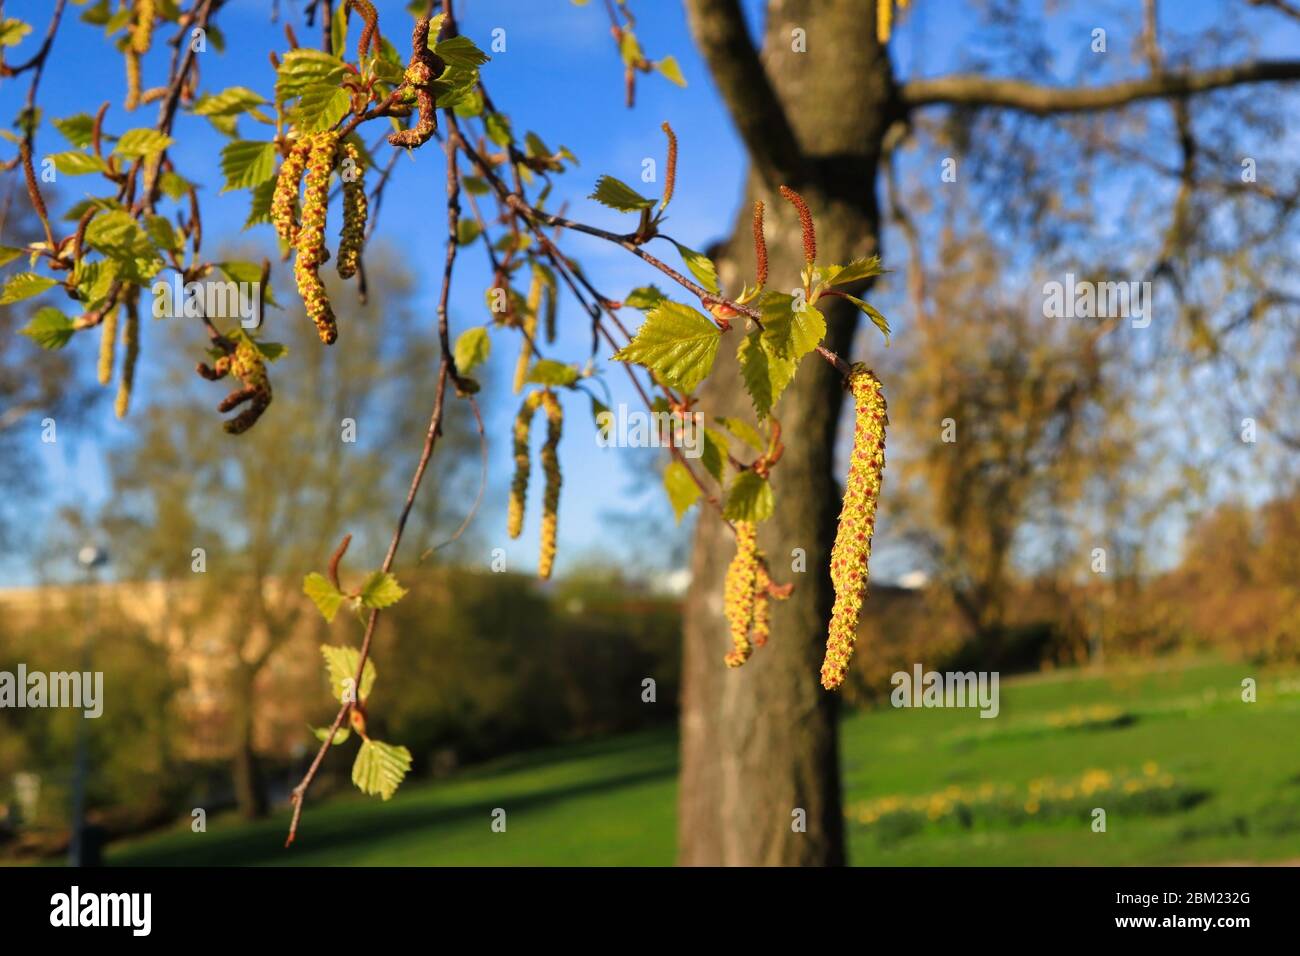 Le bouleau (Betula) fleurit ou chatons et feuilles vertes au printemps contre le paysage du parc. L'allergie au pollen de bouleau est une allergie saisonnière courante. Banque D'Images